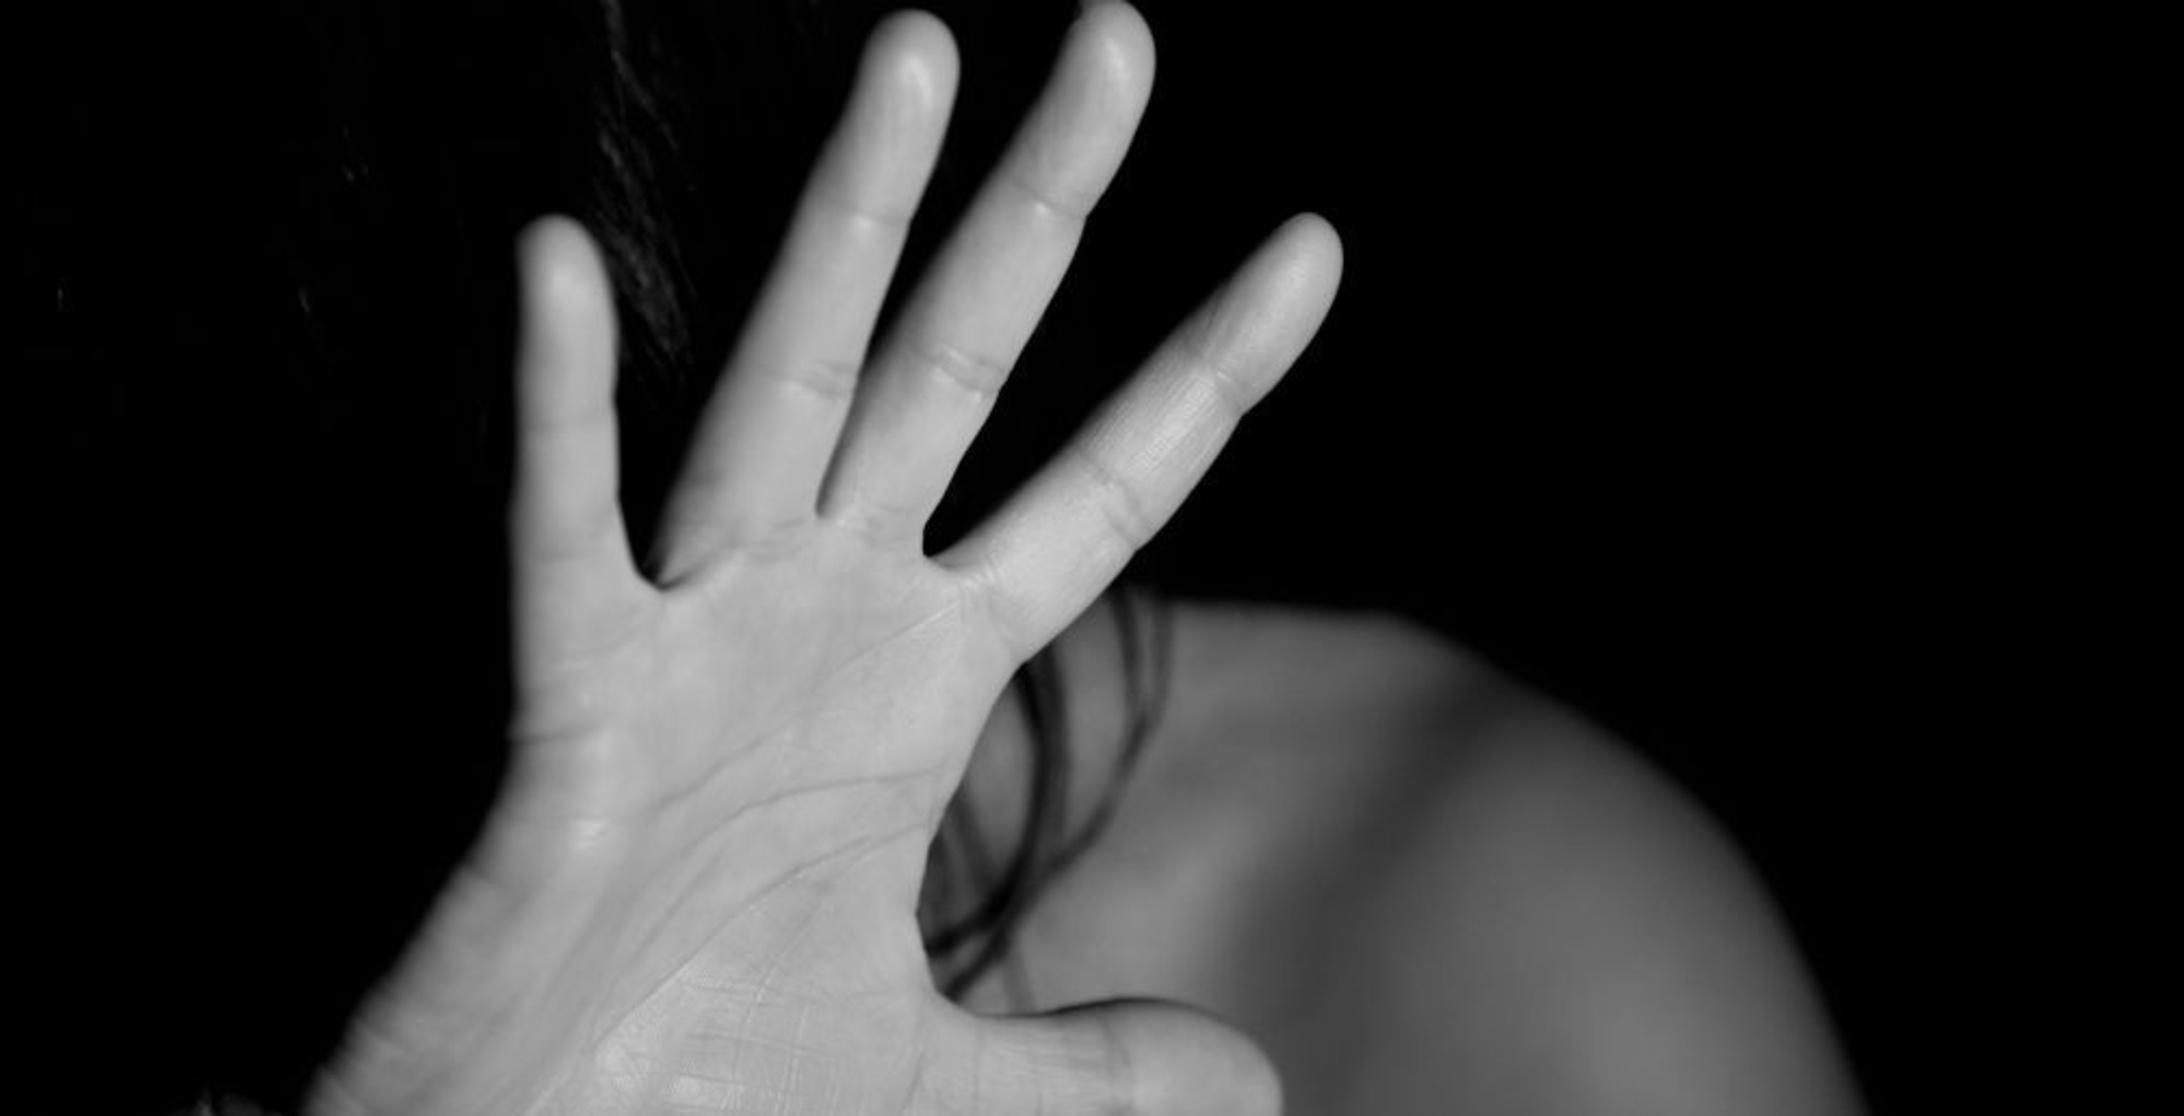 11 قضية اغتصاب لأطفال في سلطنة عمان watanserb.com